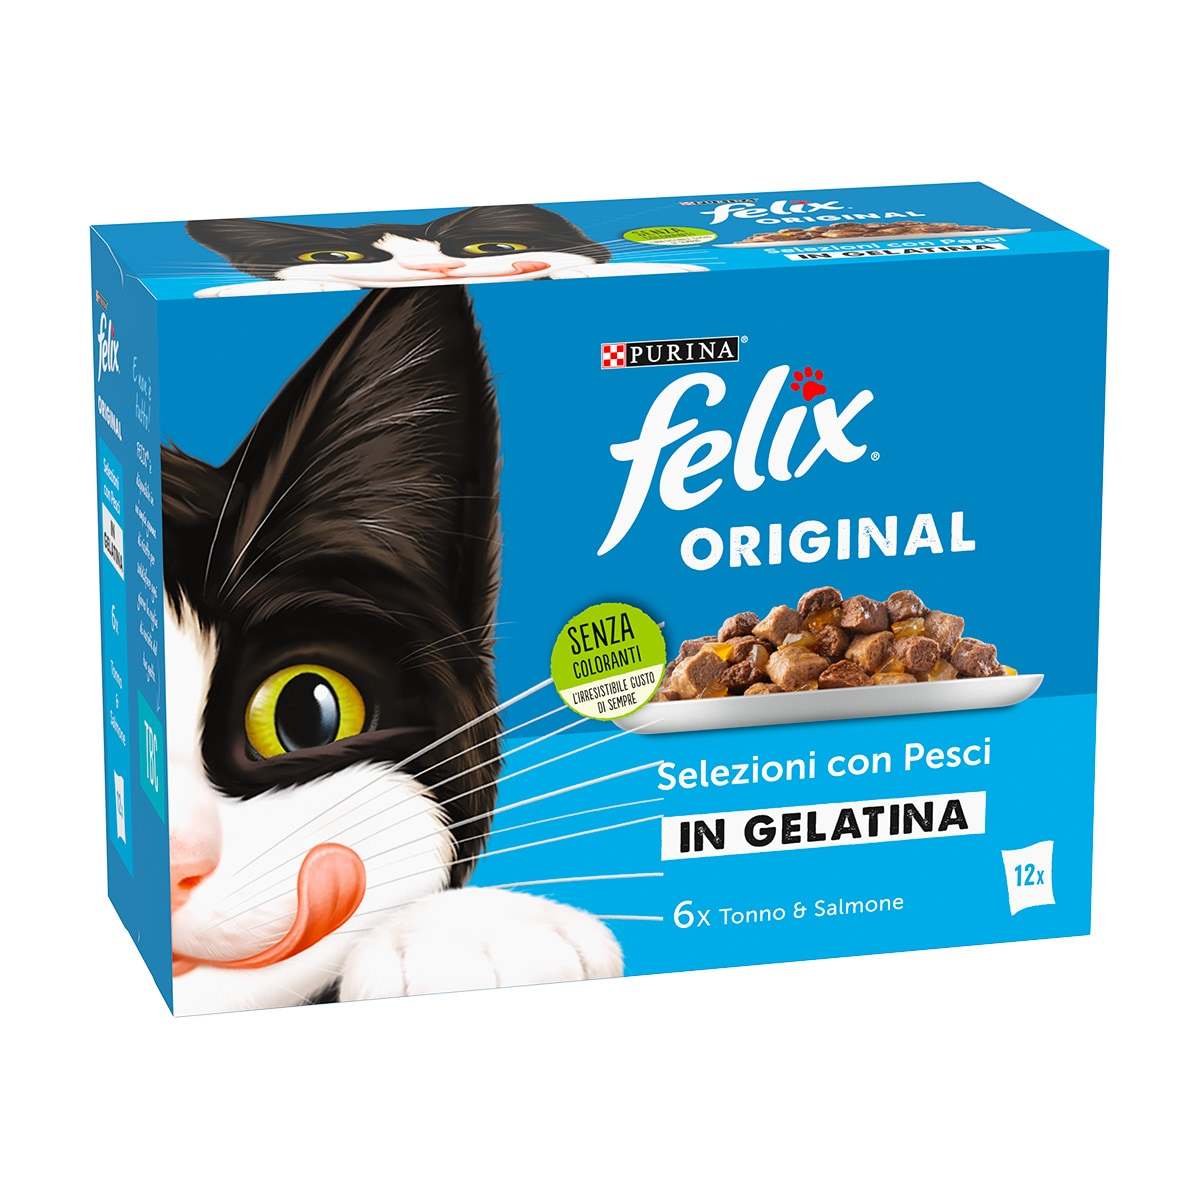 Felix Original Selezioni Con Pesci